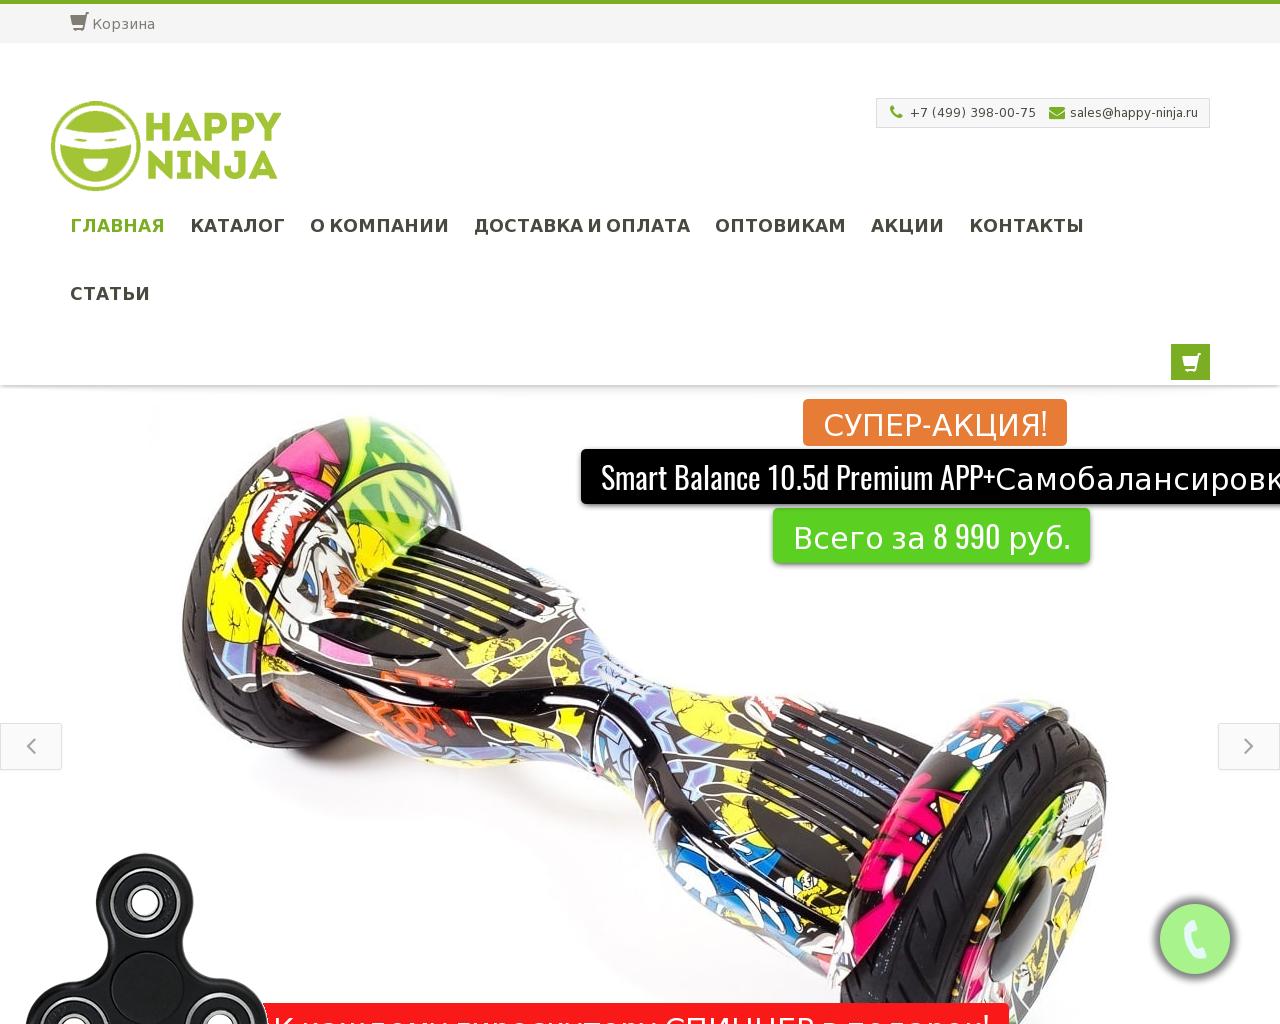 Изображение сайта happy-ninja.ru в разрешении 1280x1024